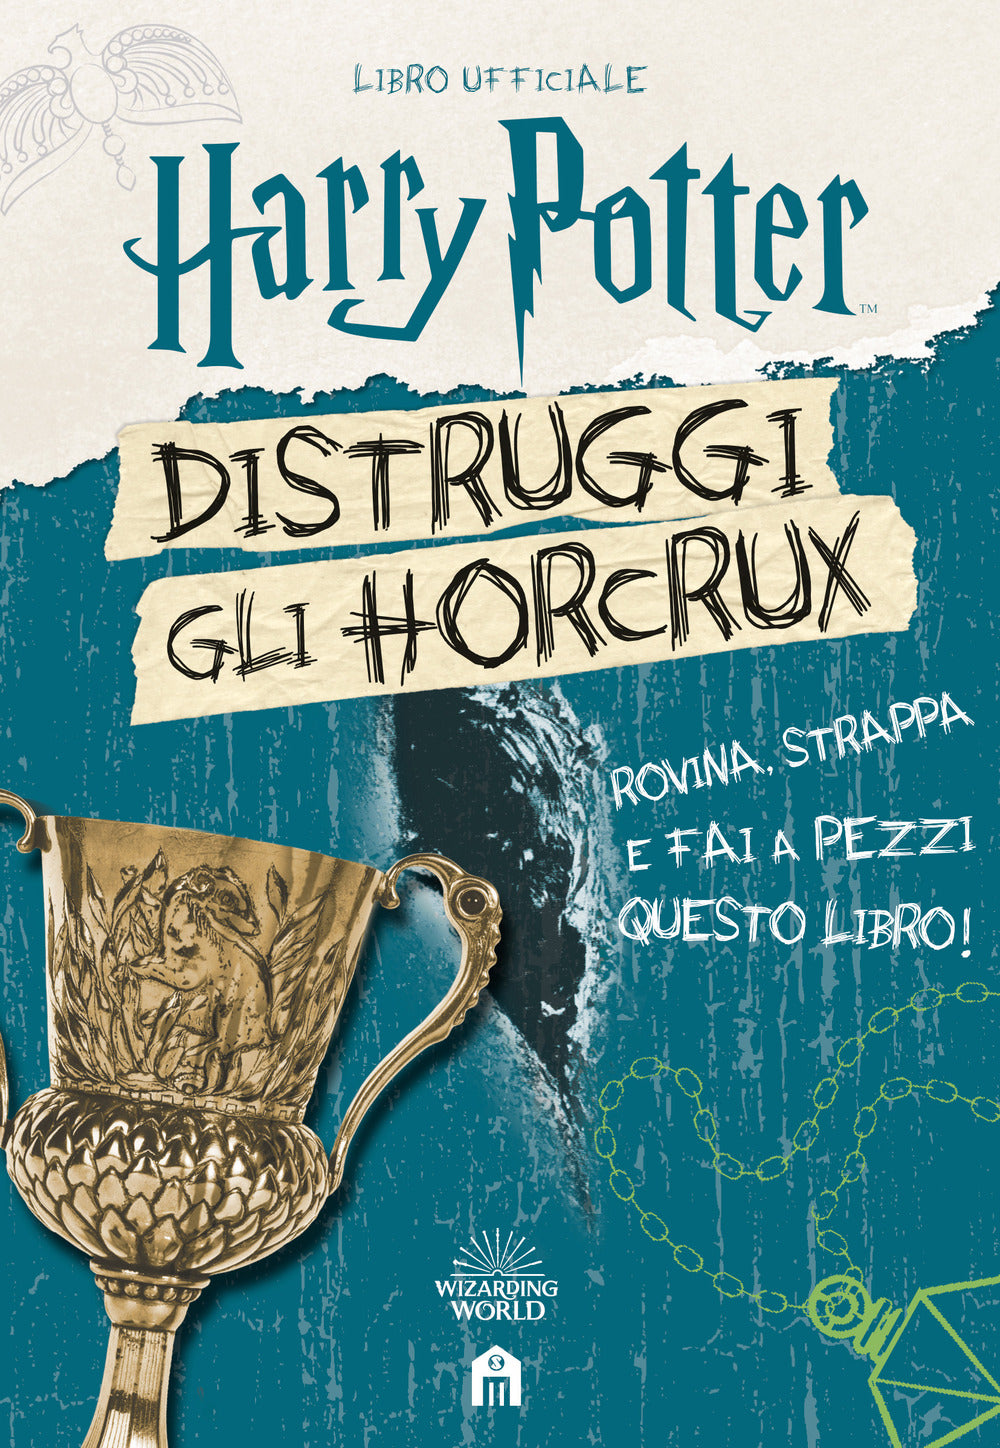 Harry Potter. Distruggi gli Horcrux.: libro di J. Rowling